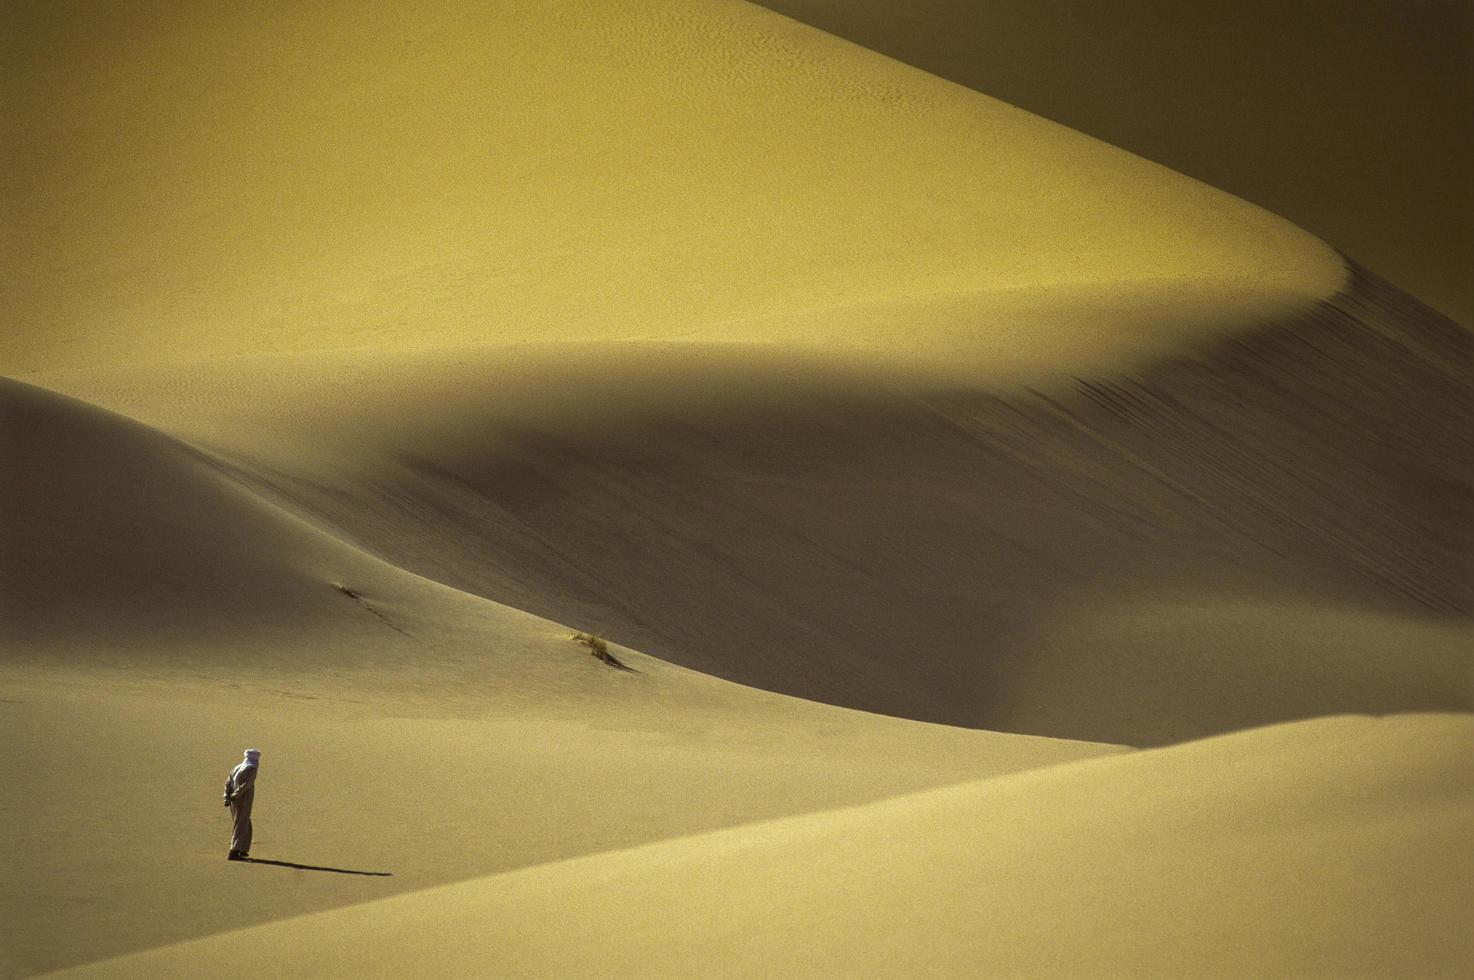 désert du tassili n'ajjer, parc national, algérie - afrique photo